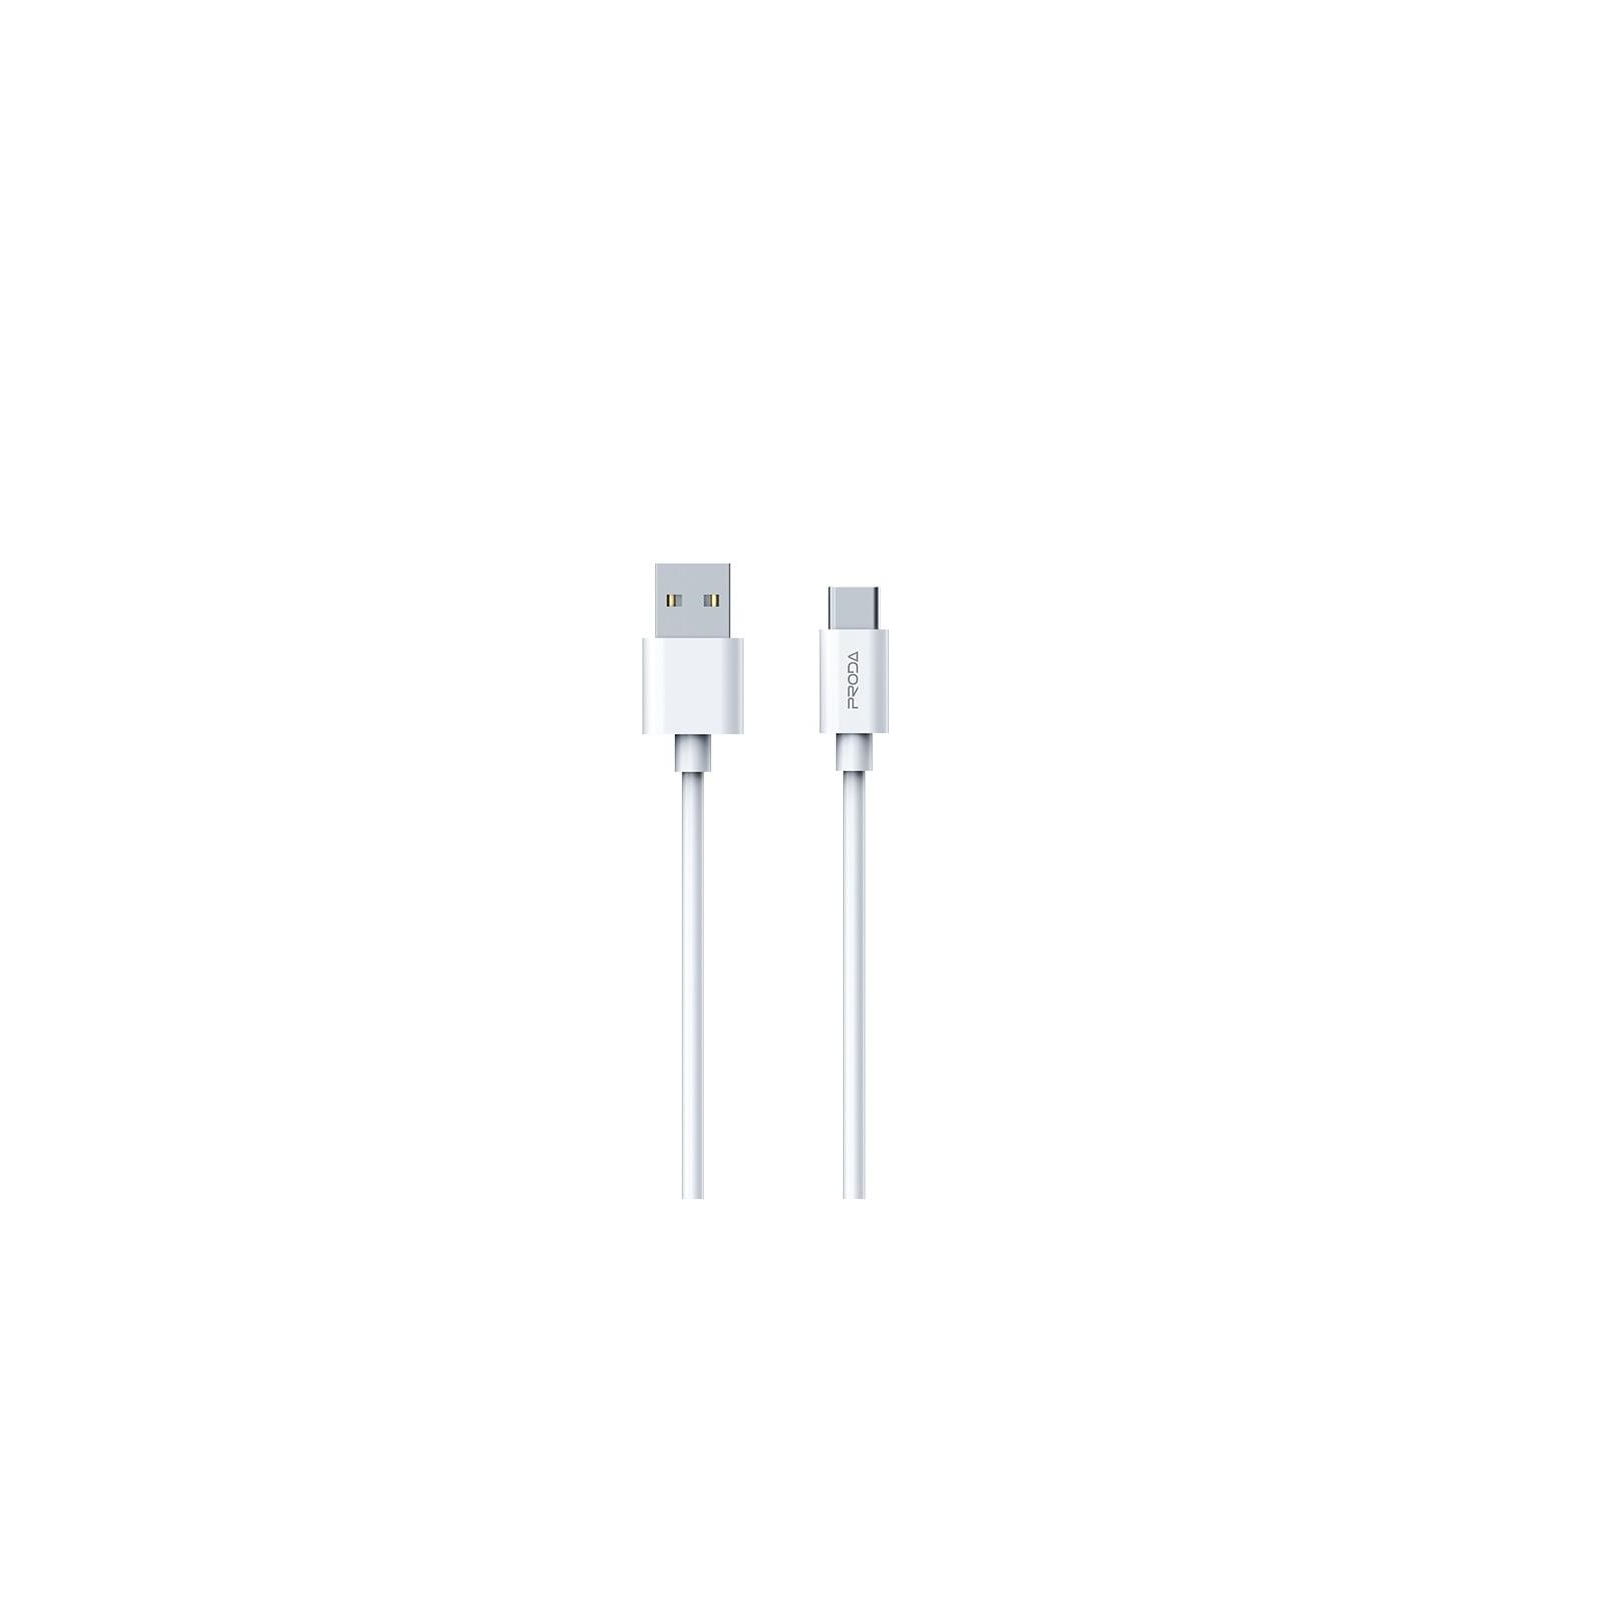 Дата кабель USB 2.0 AM to Type-C 2.4A white Proda (PD-B72a-WHT)